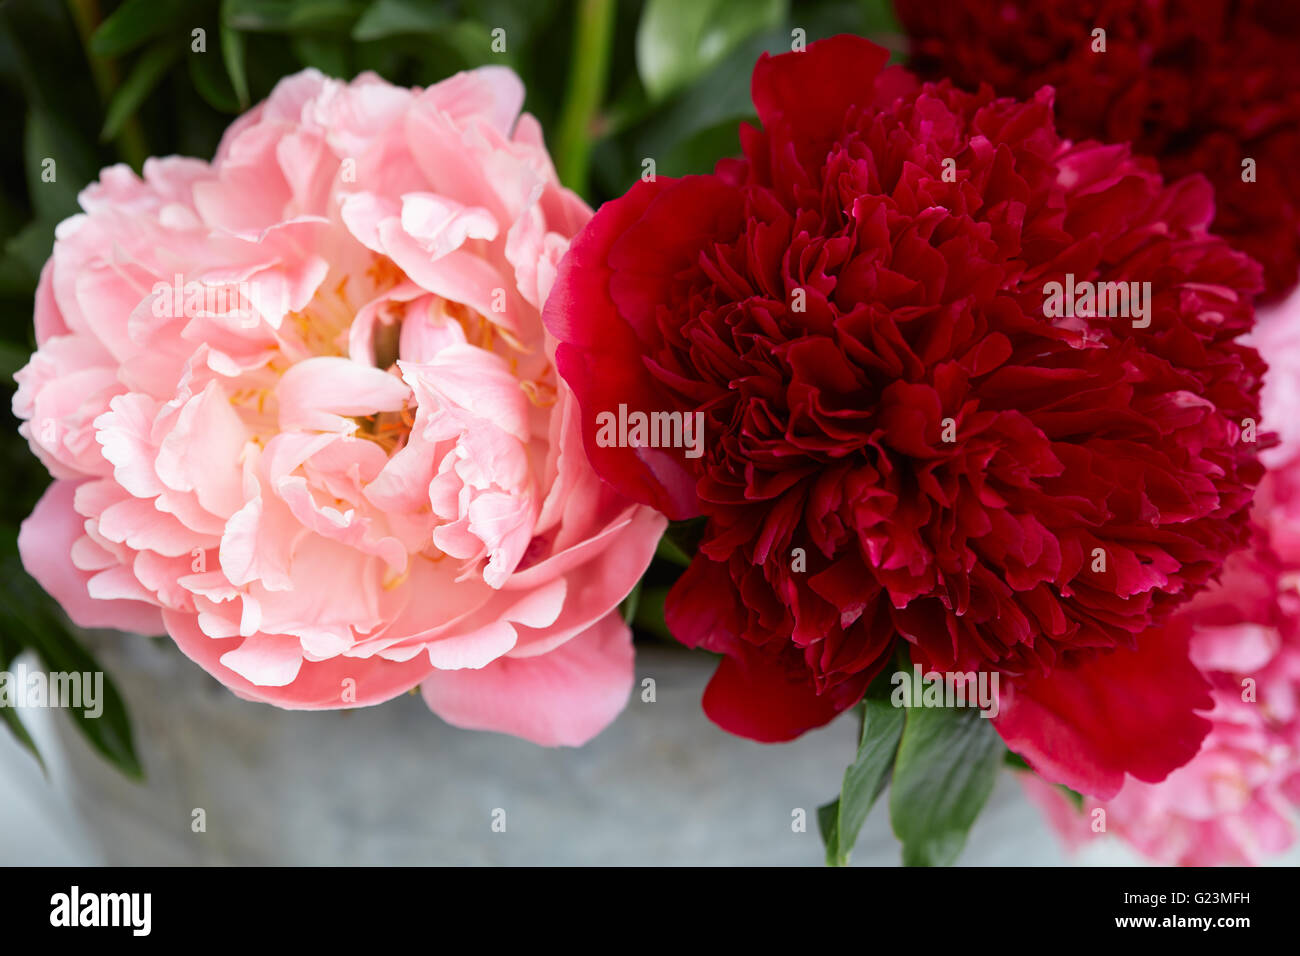 Deux fleurs de pivoine en couleurs rouge et rose avec des feuilles Banque D'Images